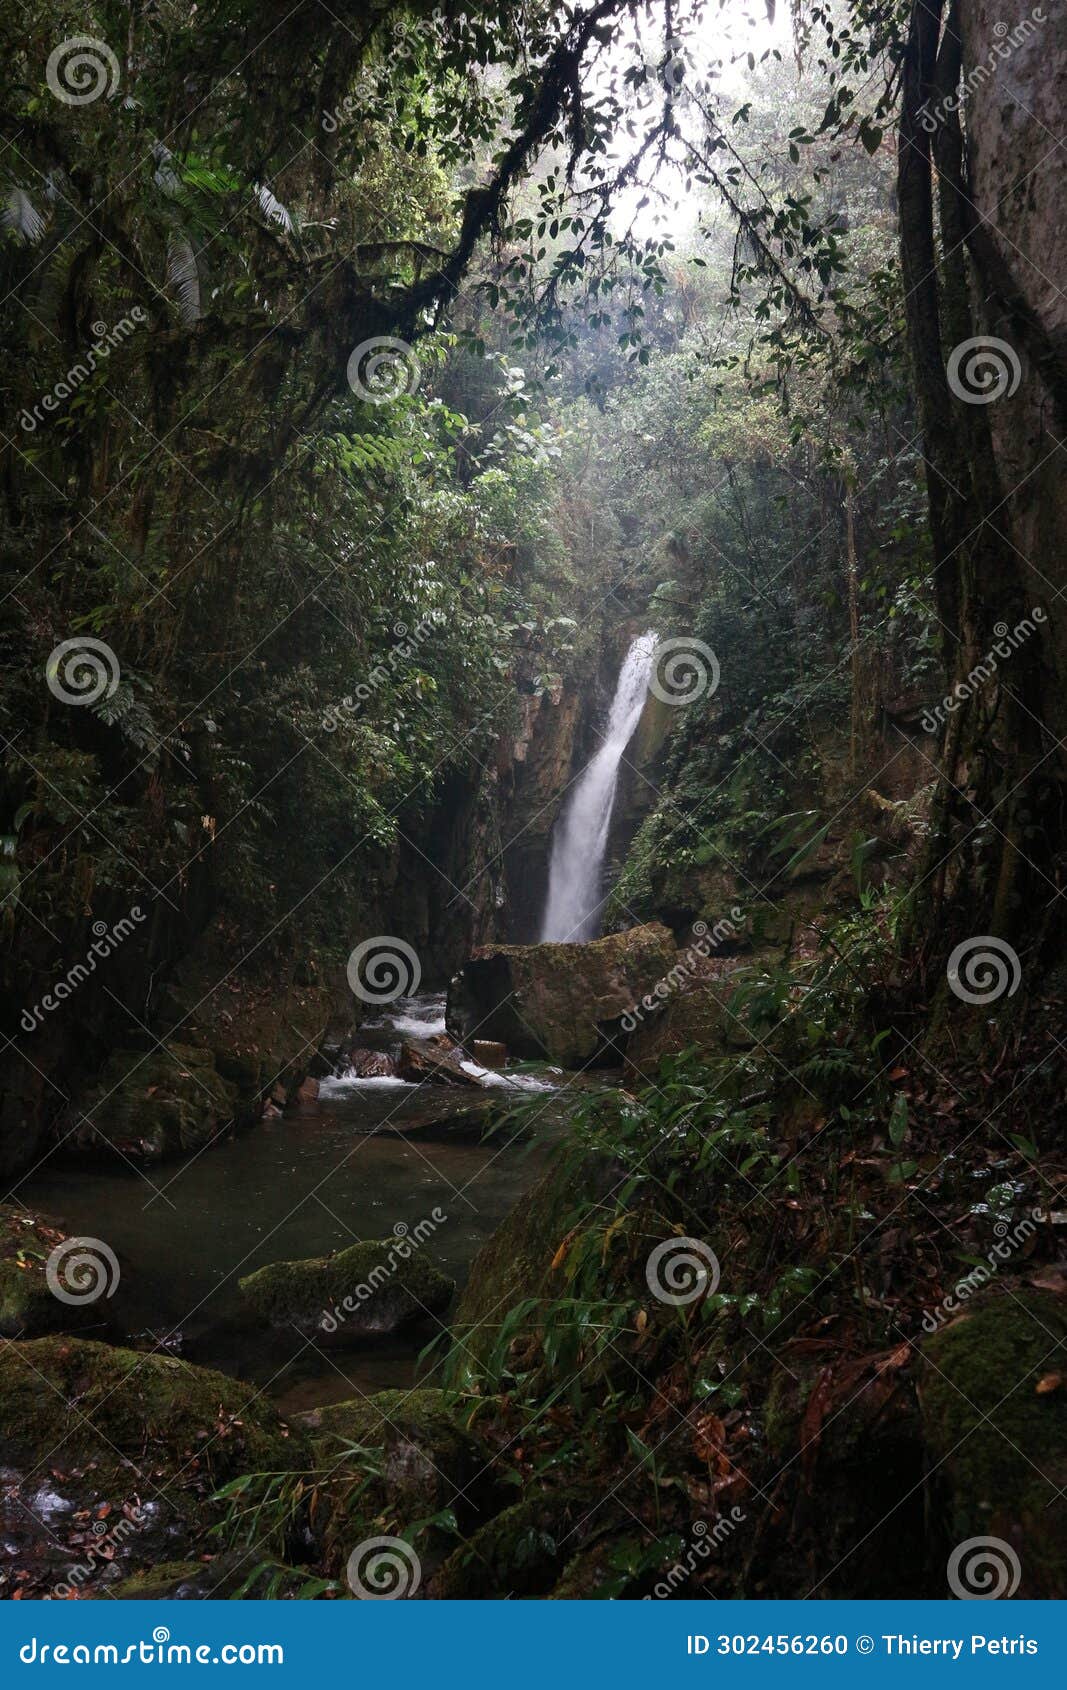 deeply hidden waterfall in tropical rainforest